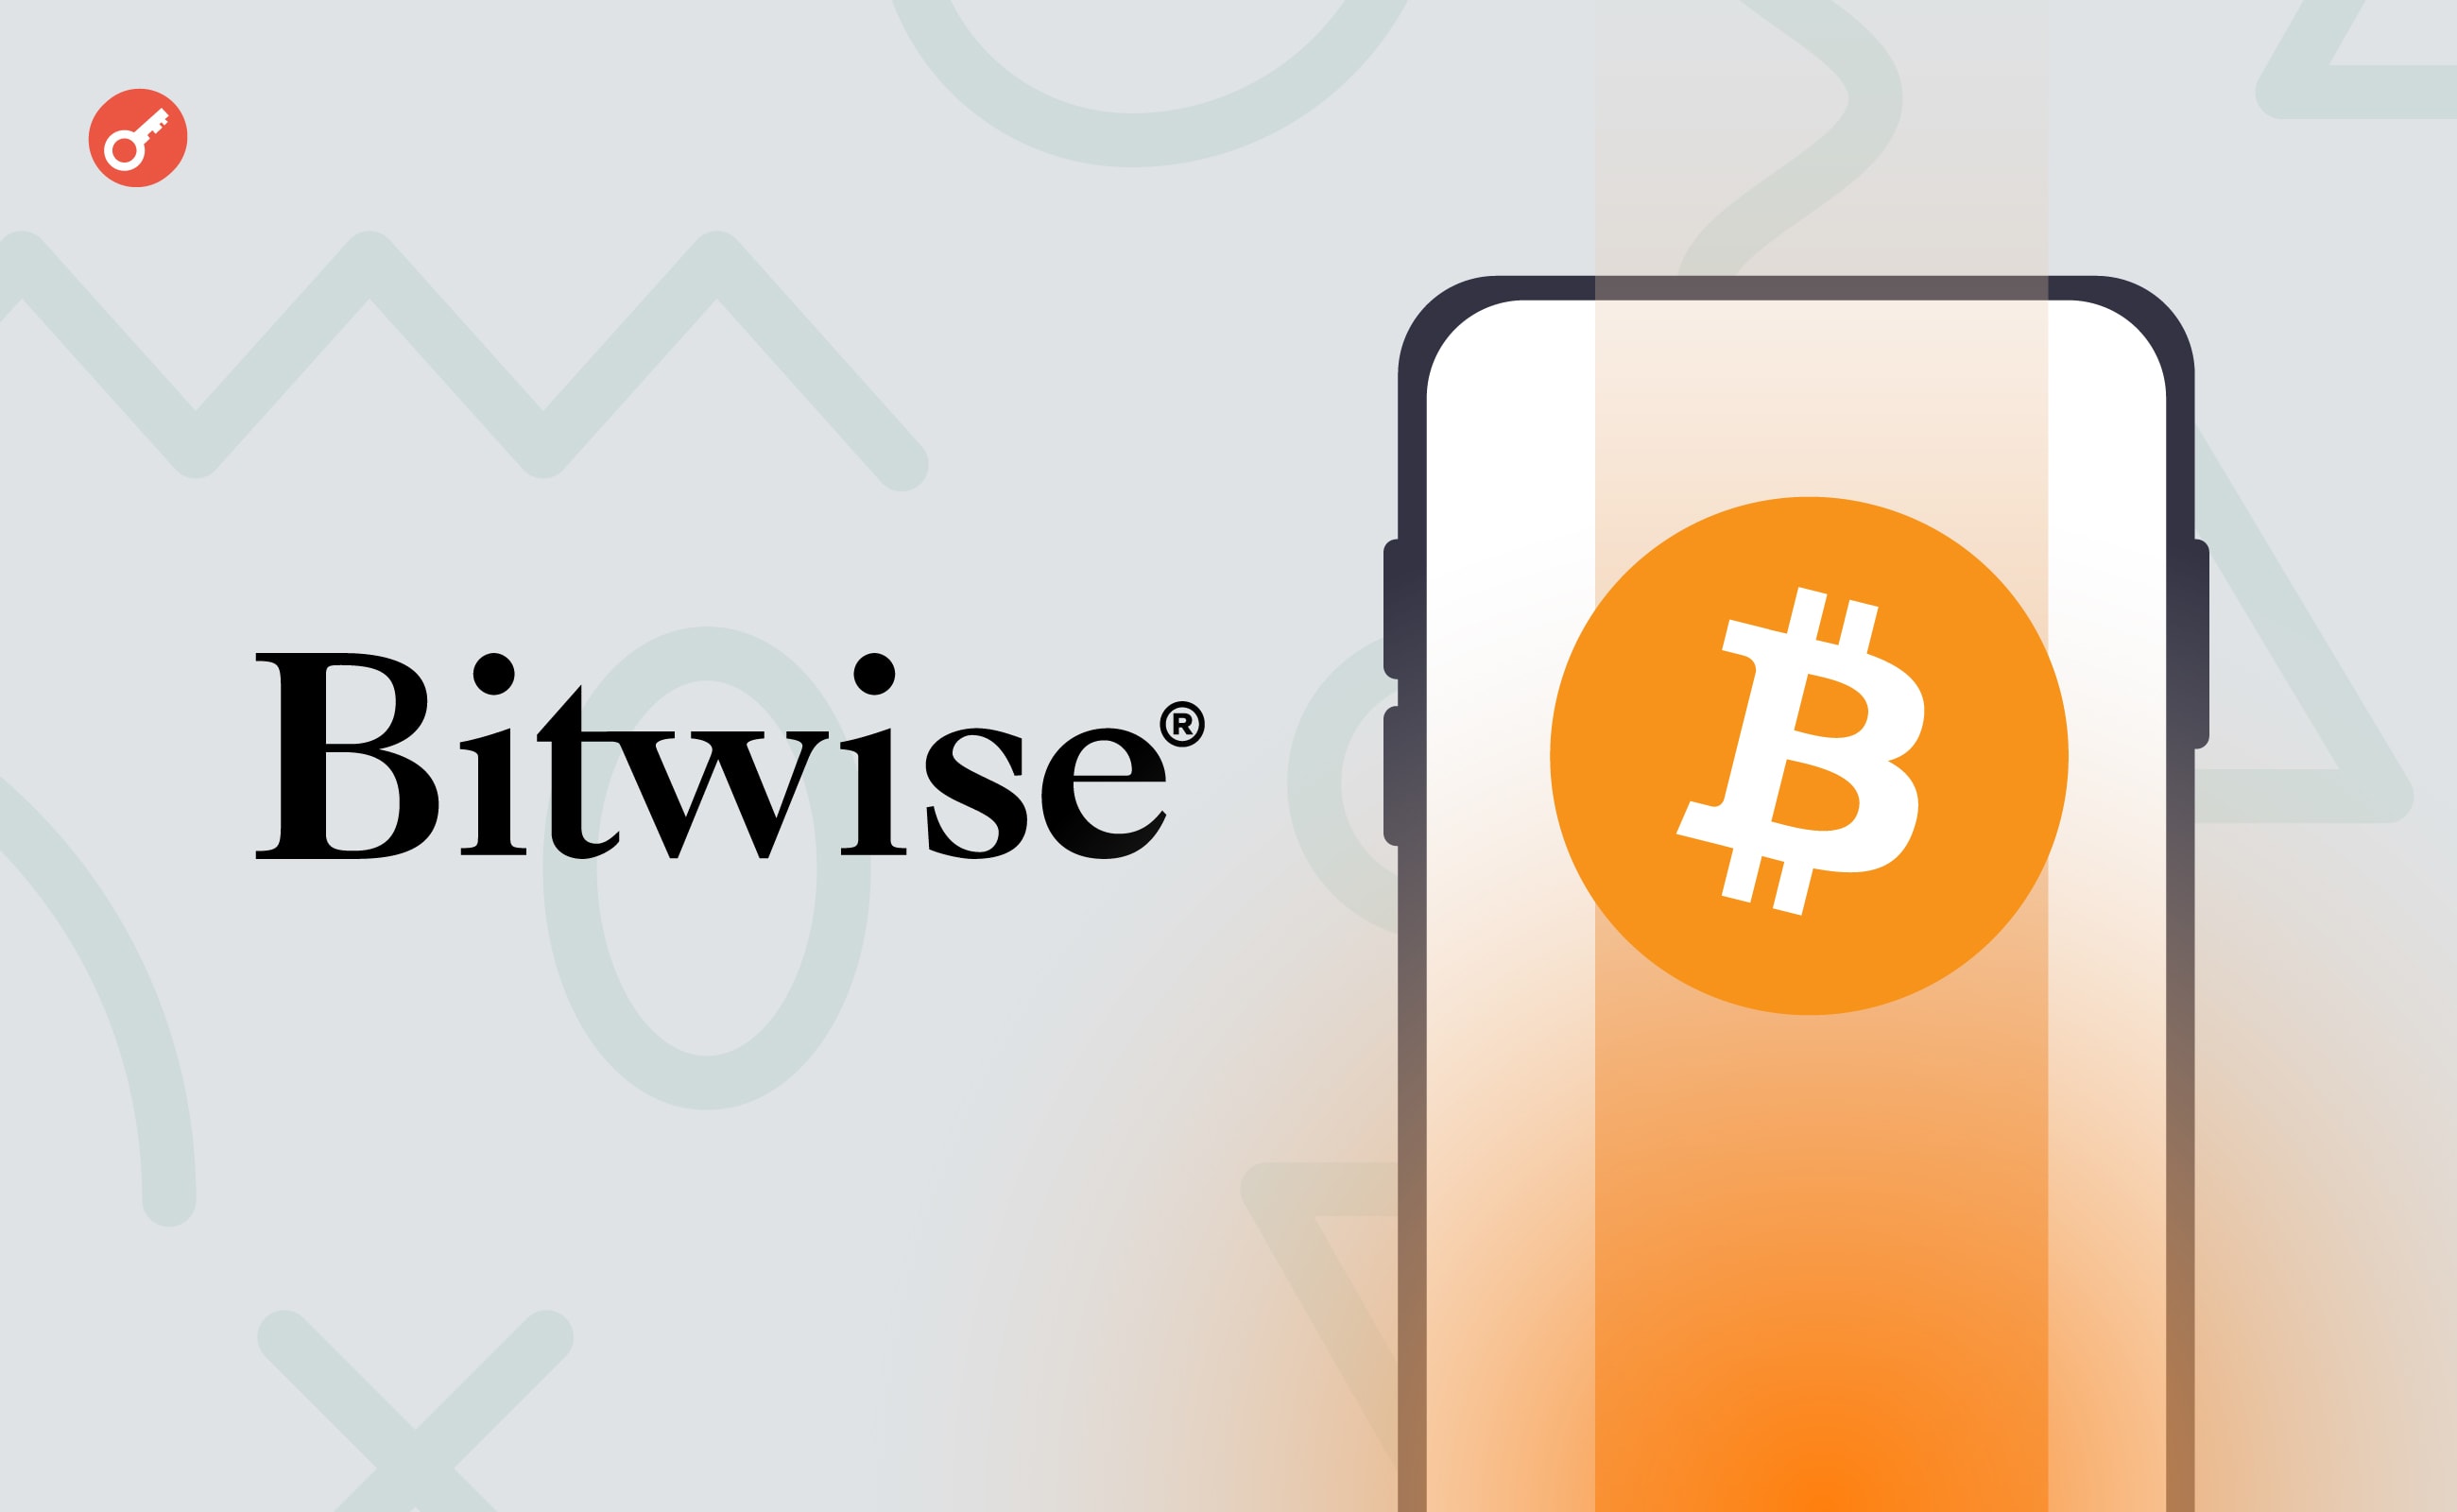 Bitwise Asset Management розкрила рахунок свого спотового біткоїн-ETF. Головний колаж новини.